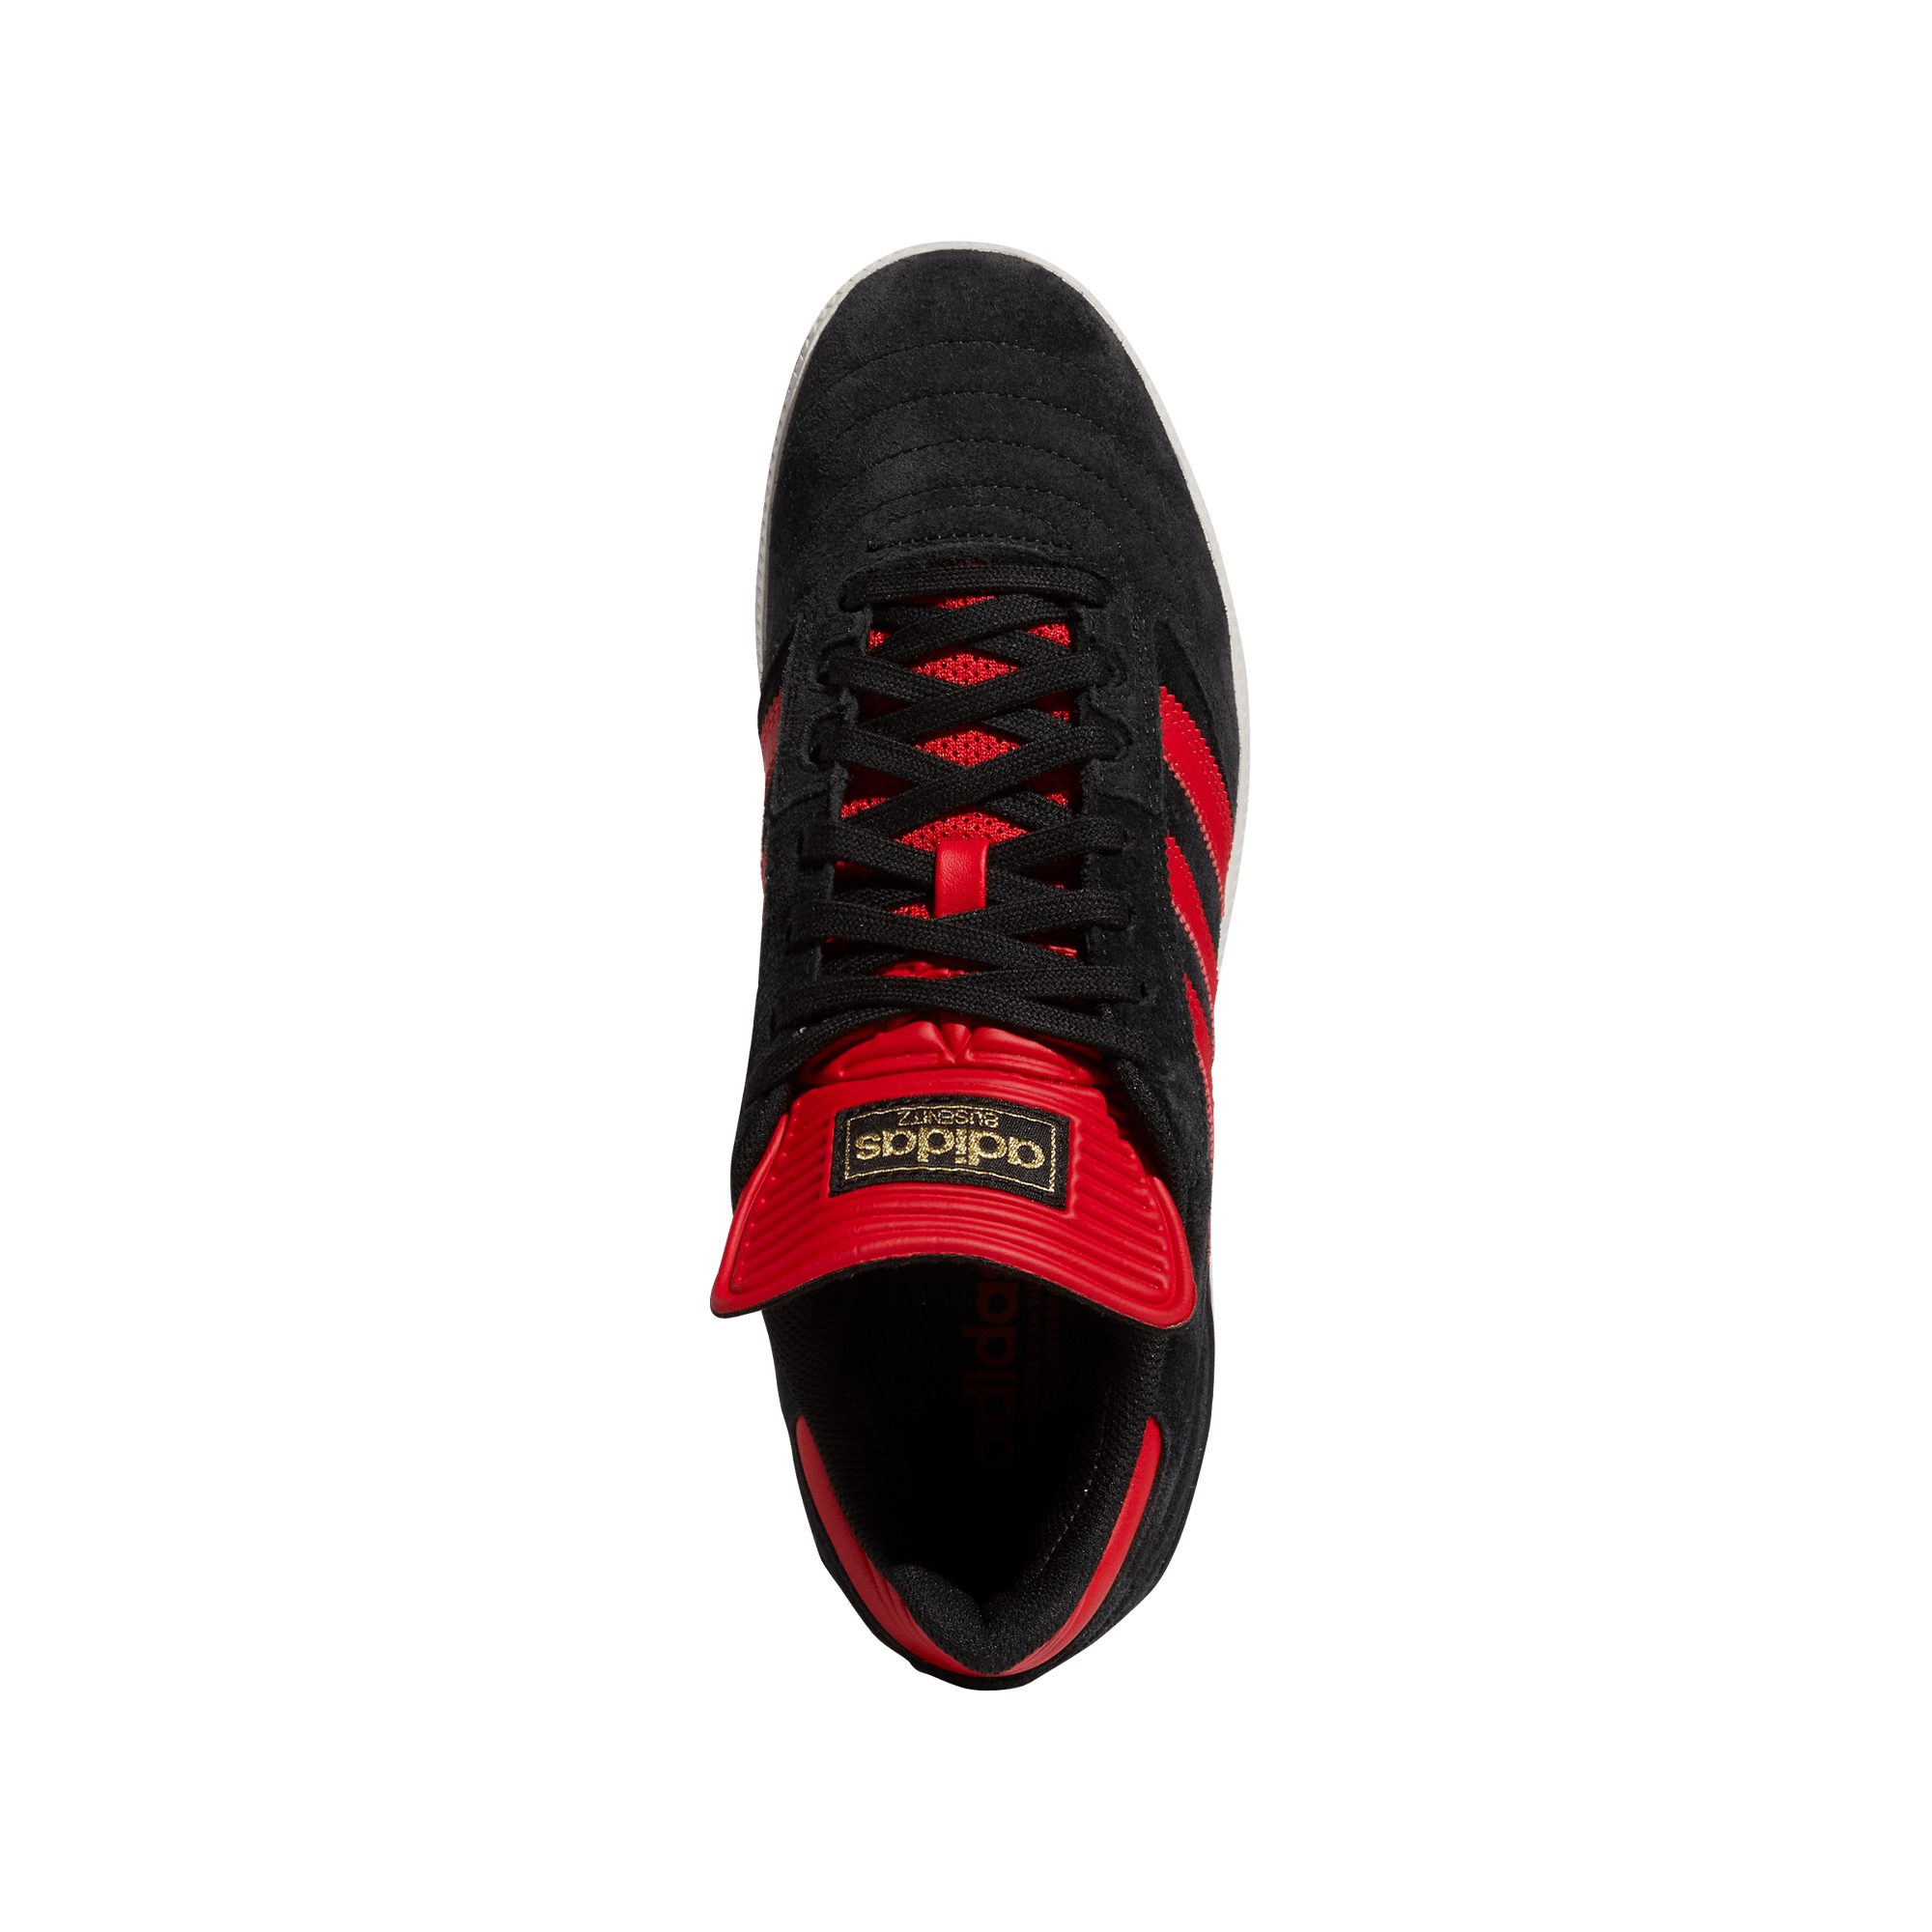 ADIDAS Busenitz Shoes Core Black/Scarlet/Gold Metallic Men's Skate Shoes Adidas 